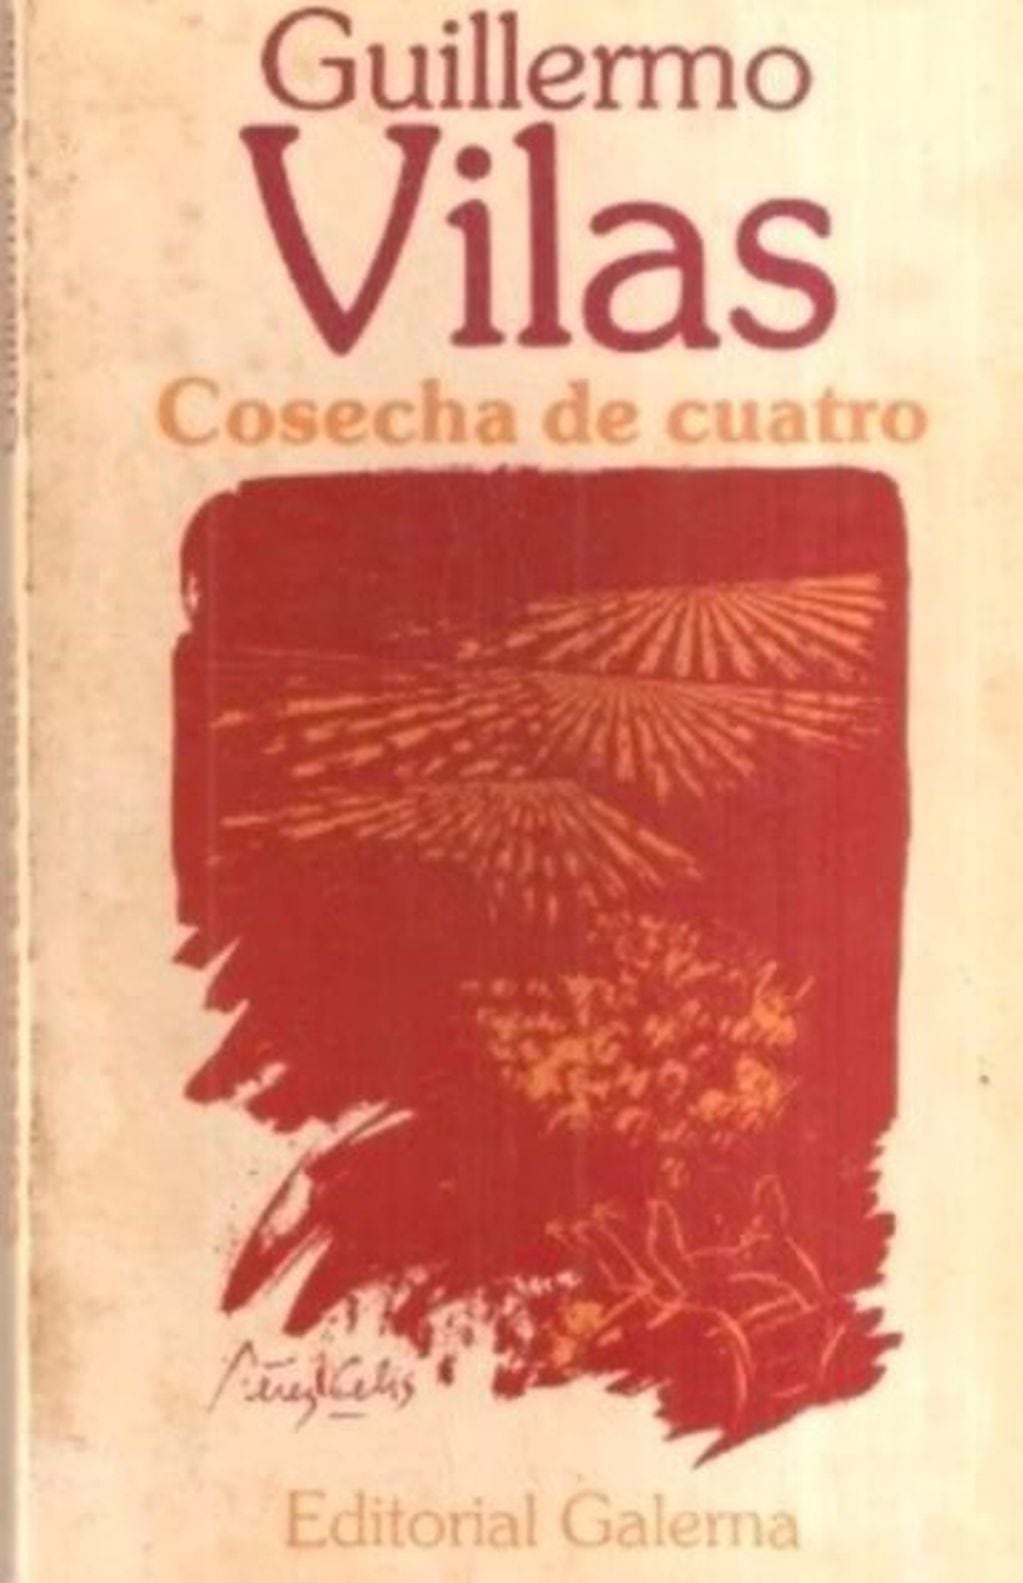 Libro  "Cosecha de cuatro", de Guillermo Vilas. (Foto: Clarín)